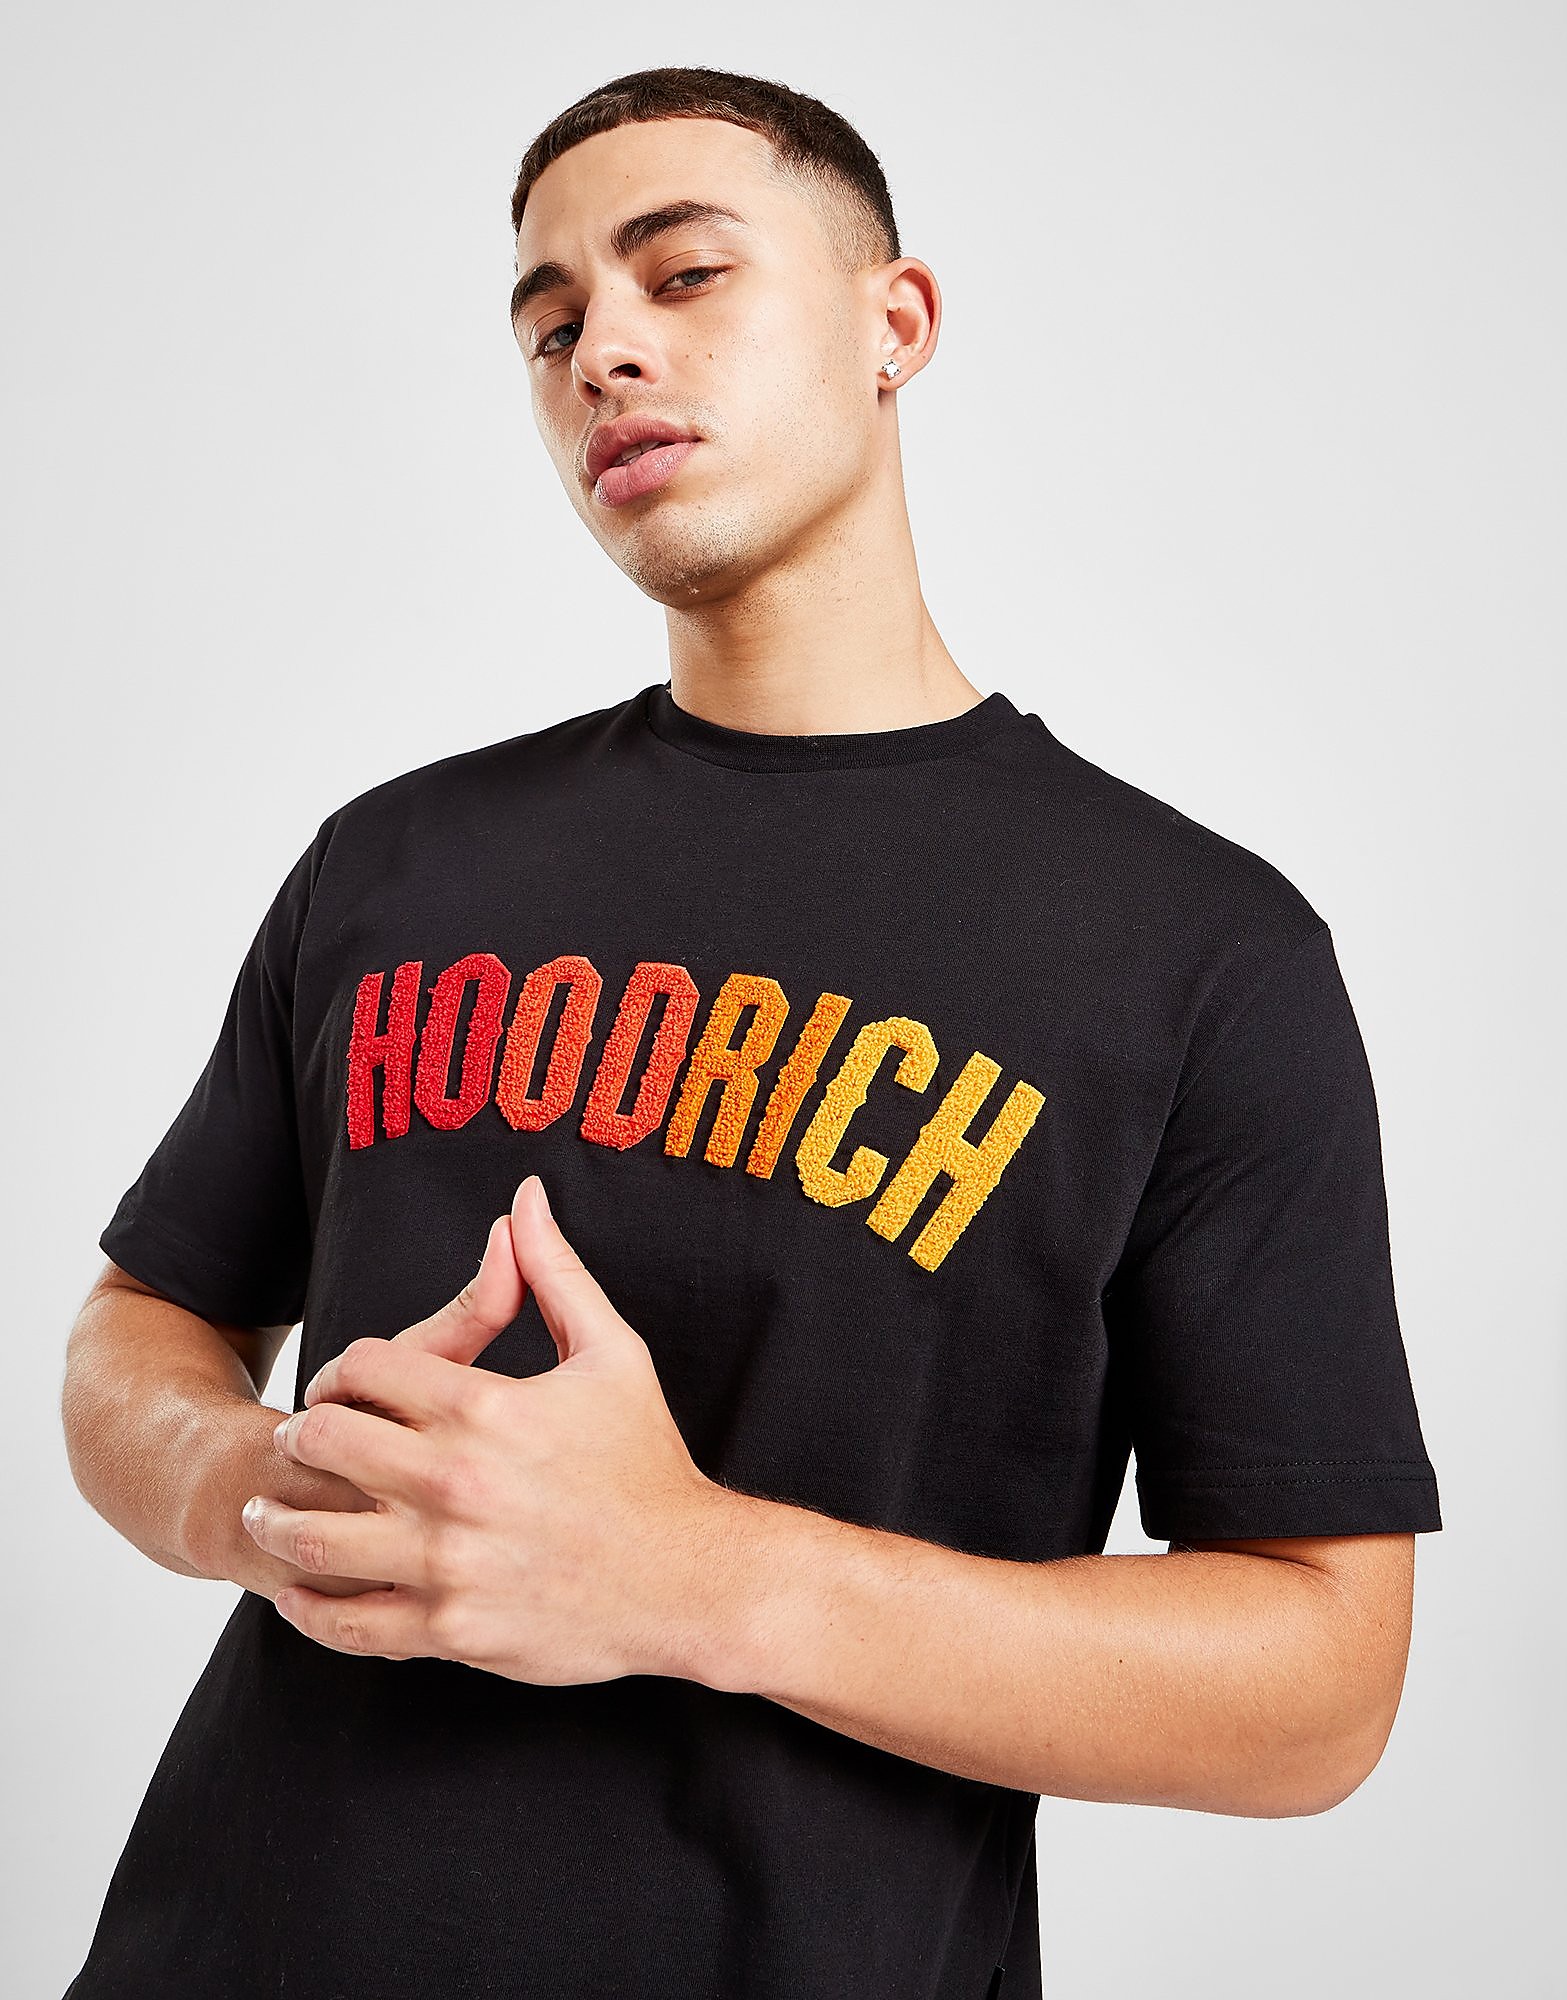 Hoodrich Kraze T-Shirt - Preto - Mens, Preto